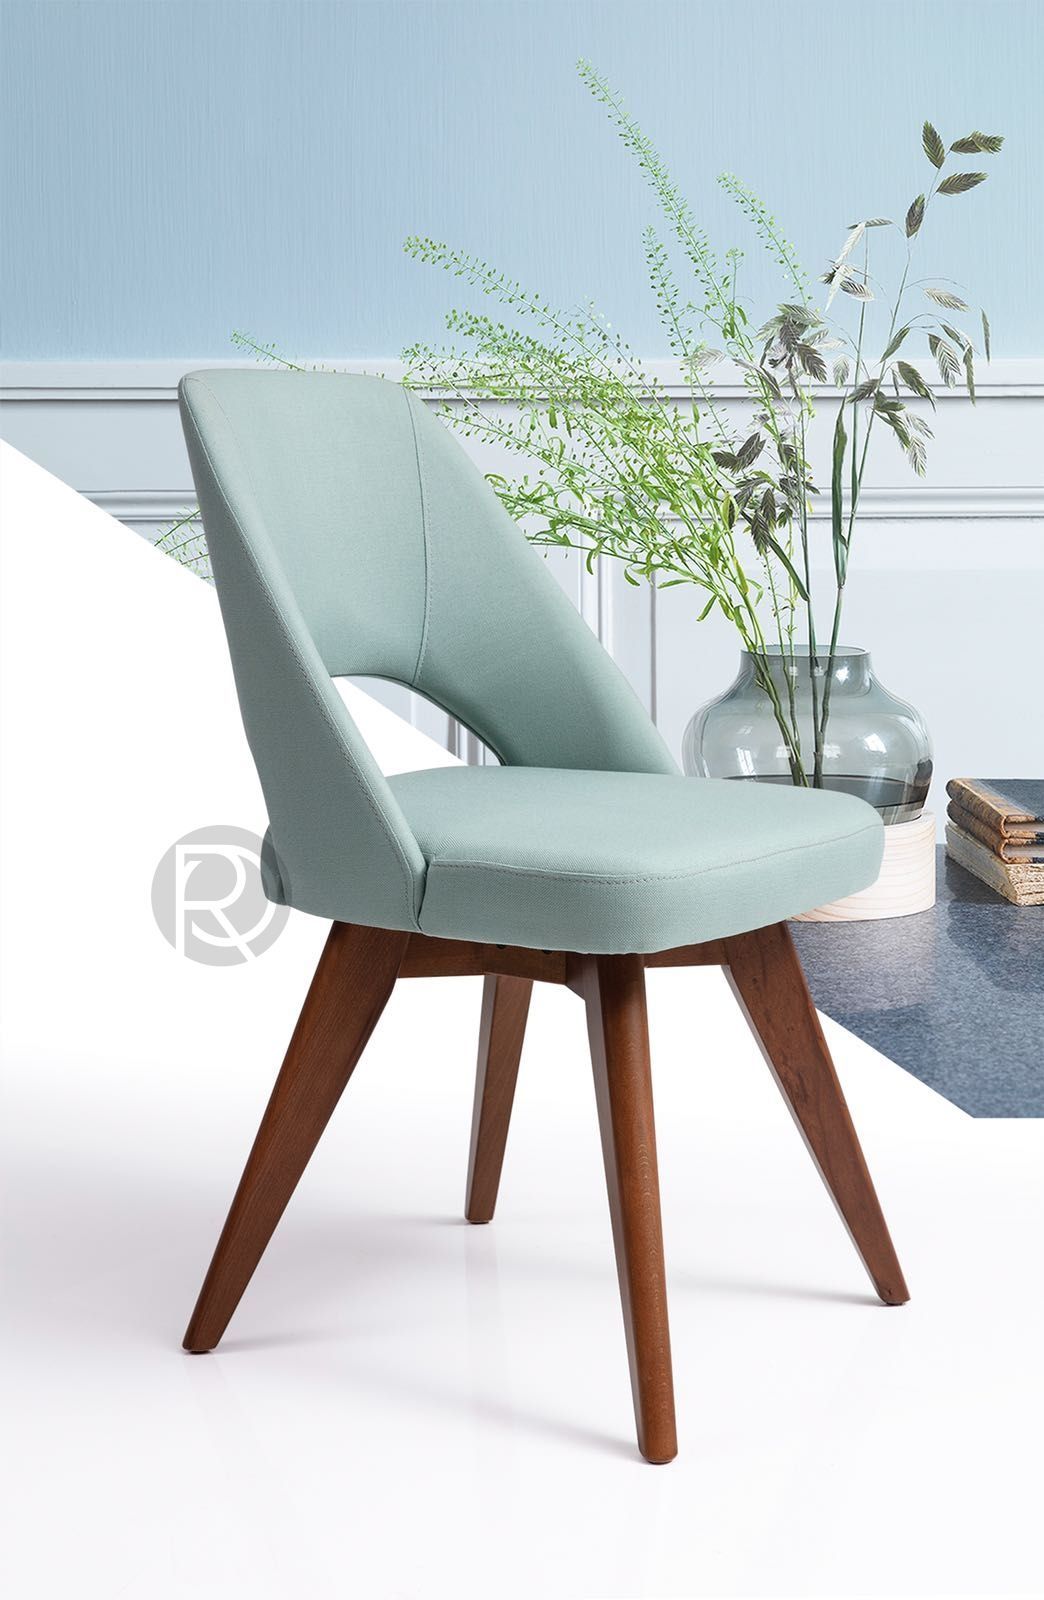 COVHE chair by Romatti